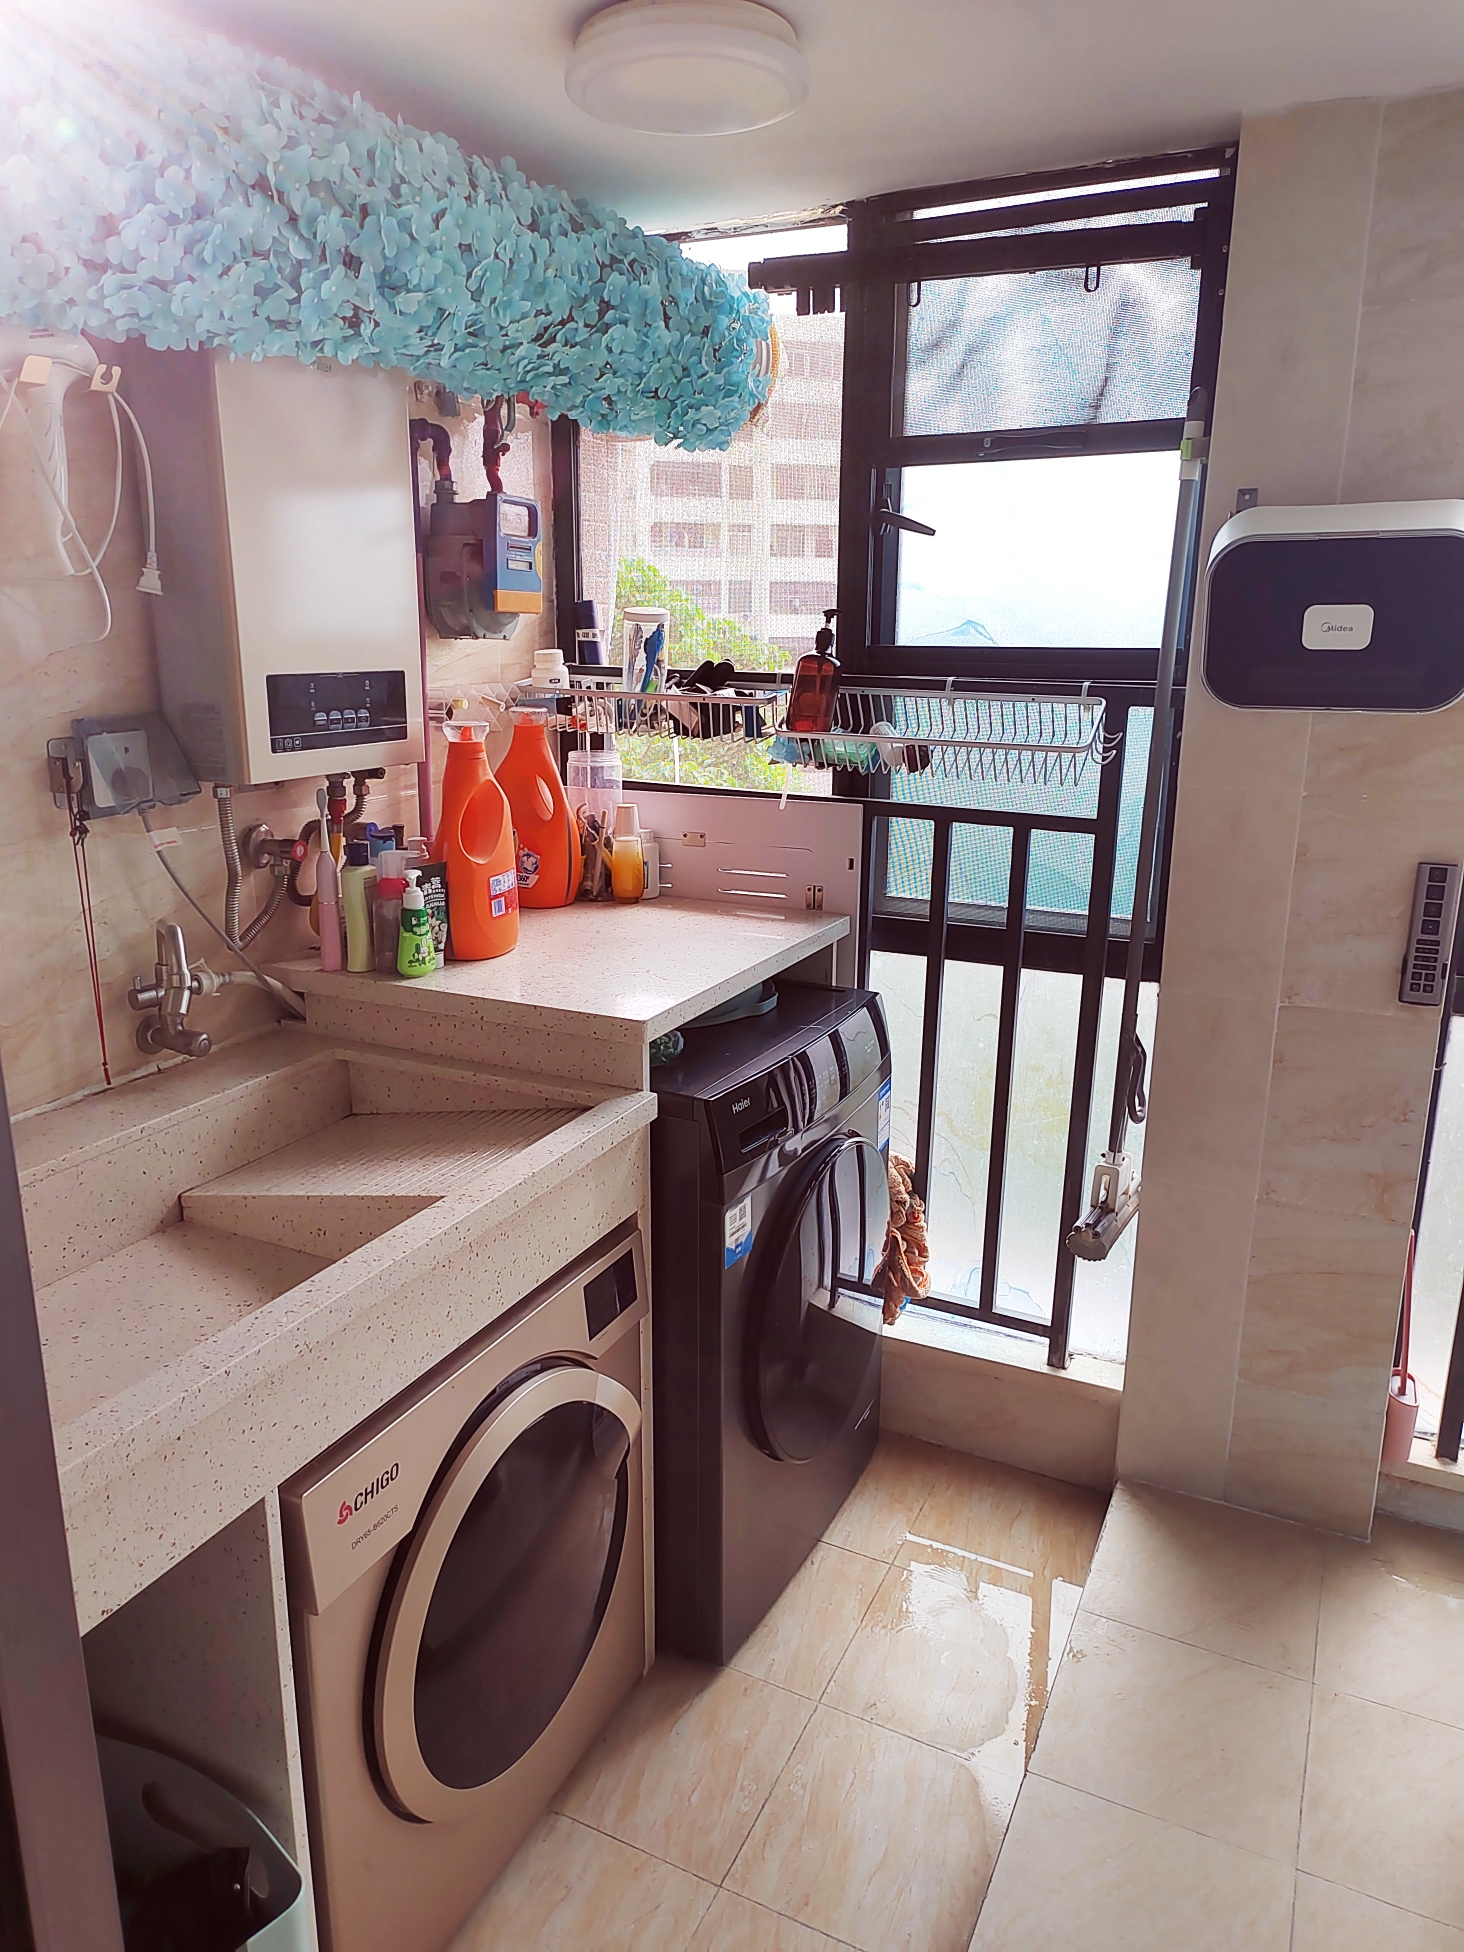 Dongguan-Guancheng-Cozy Home,Clean&Comfy,No Gender Limit,Hustle & Bustle